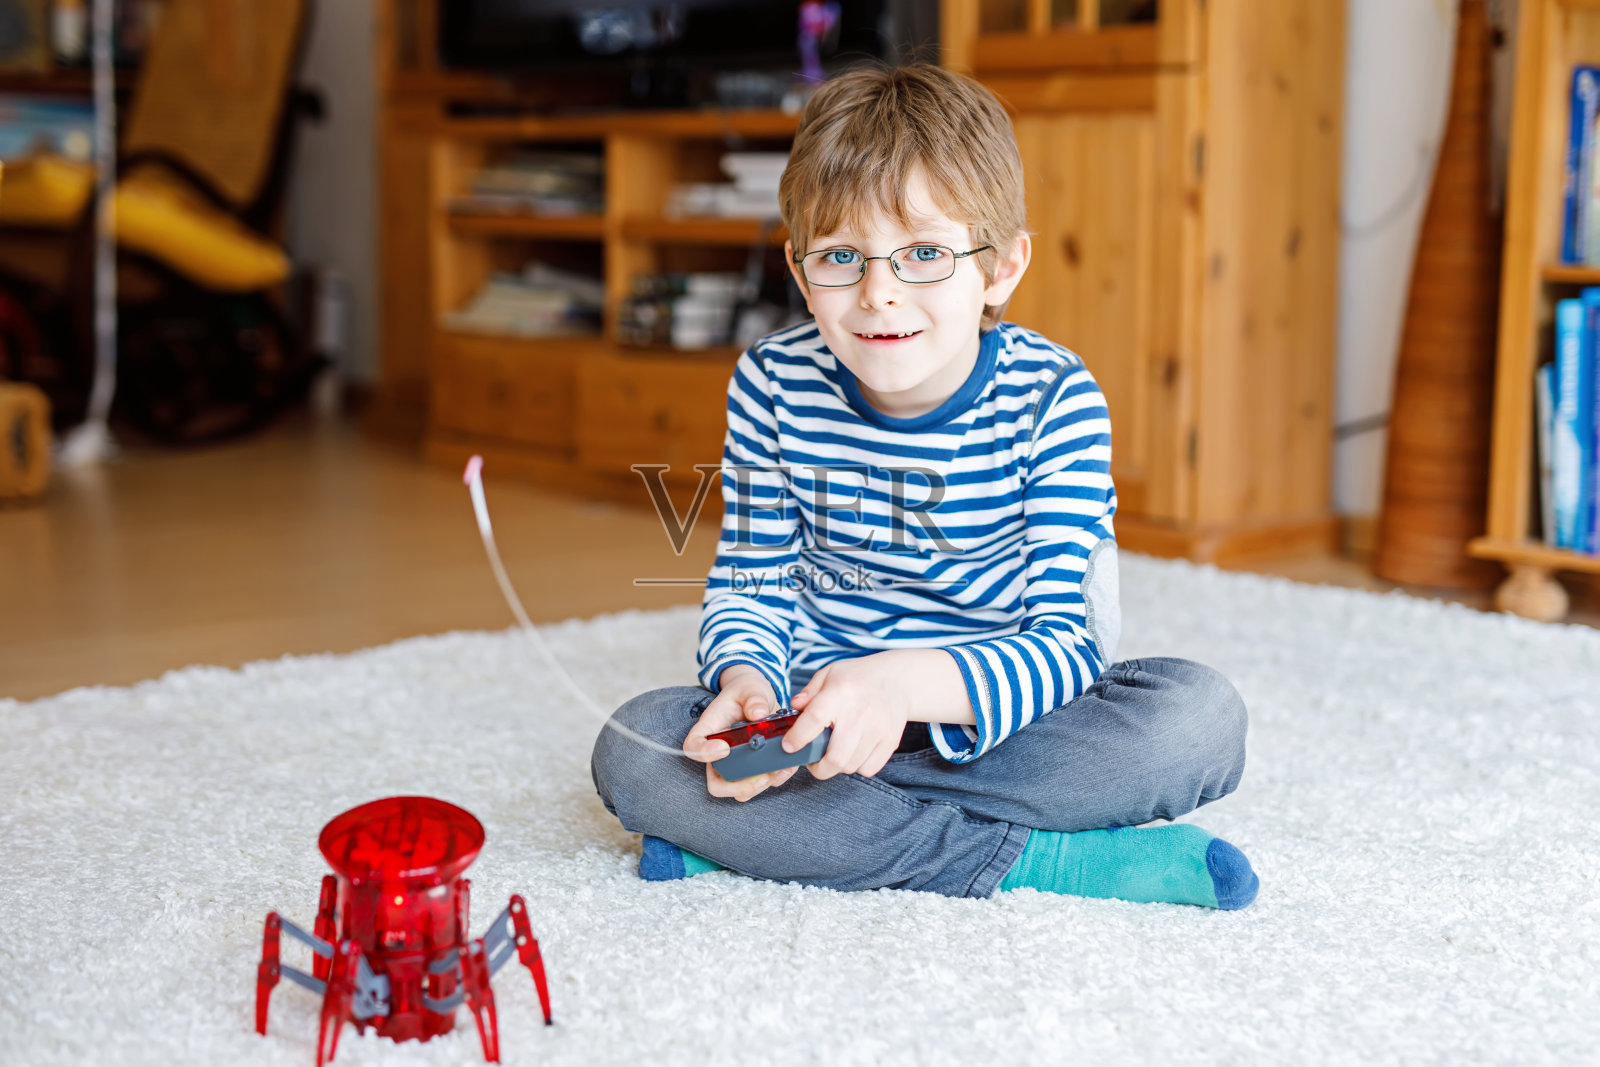 戴眼镜的小男孩在玩机器人蜘蛛玩具。快乐的孩子与探索机器人游戏的乐趣。照片摄影图片